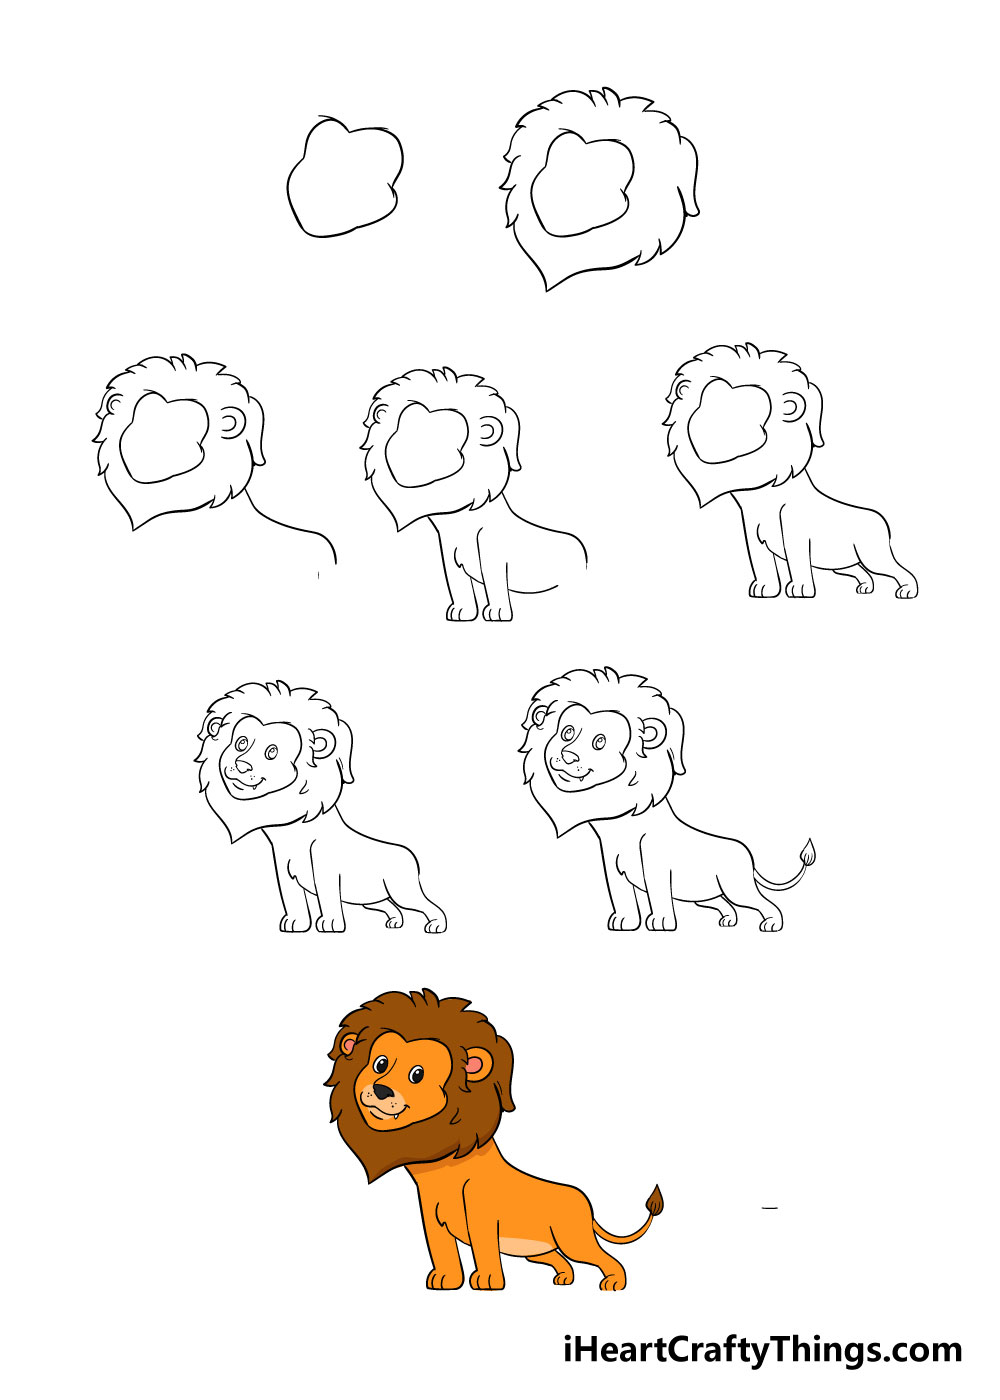 Xem hơn 100 ảnh về hình vẽ sư tử đẹp - daotaonec